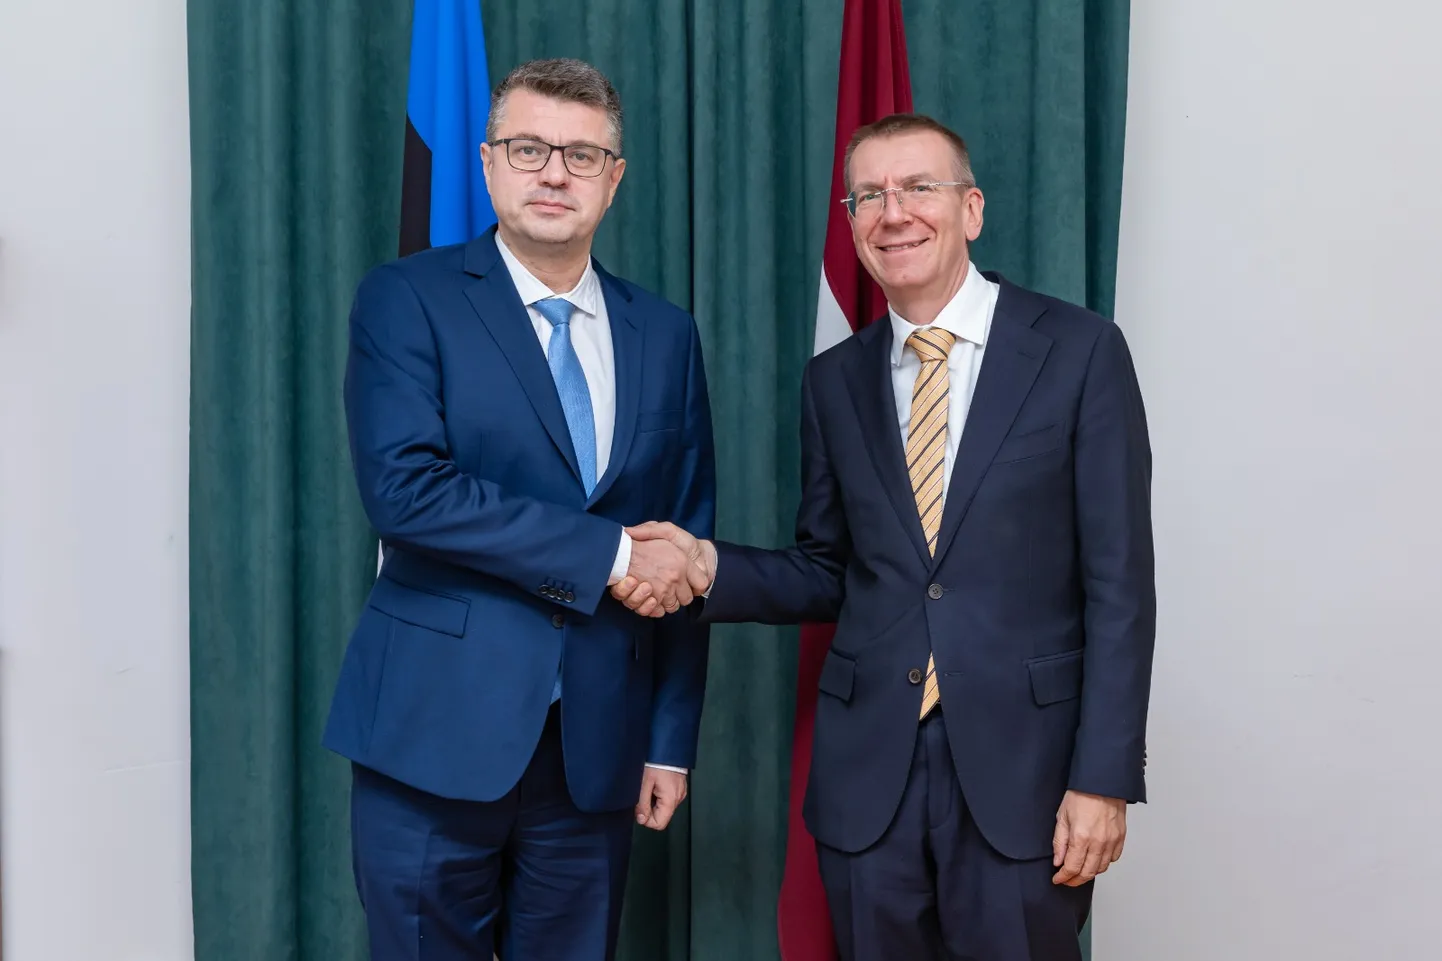 Министр иностранных дел Рейнсалу и Министр иностранных дел Латвии Ринкевич.